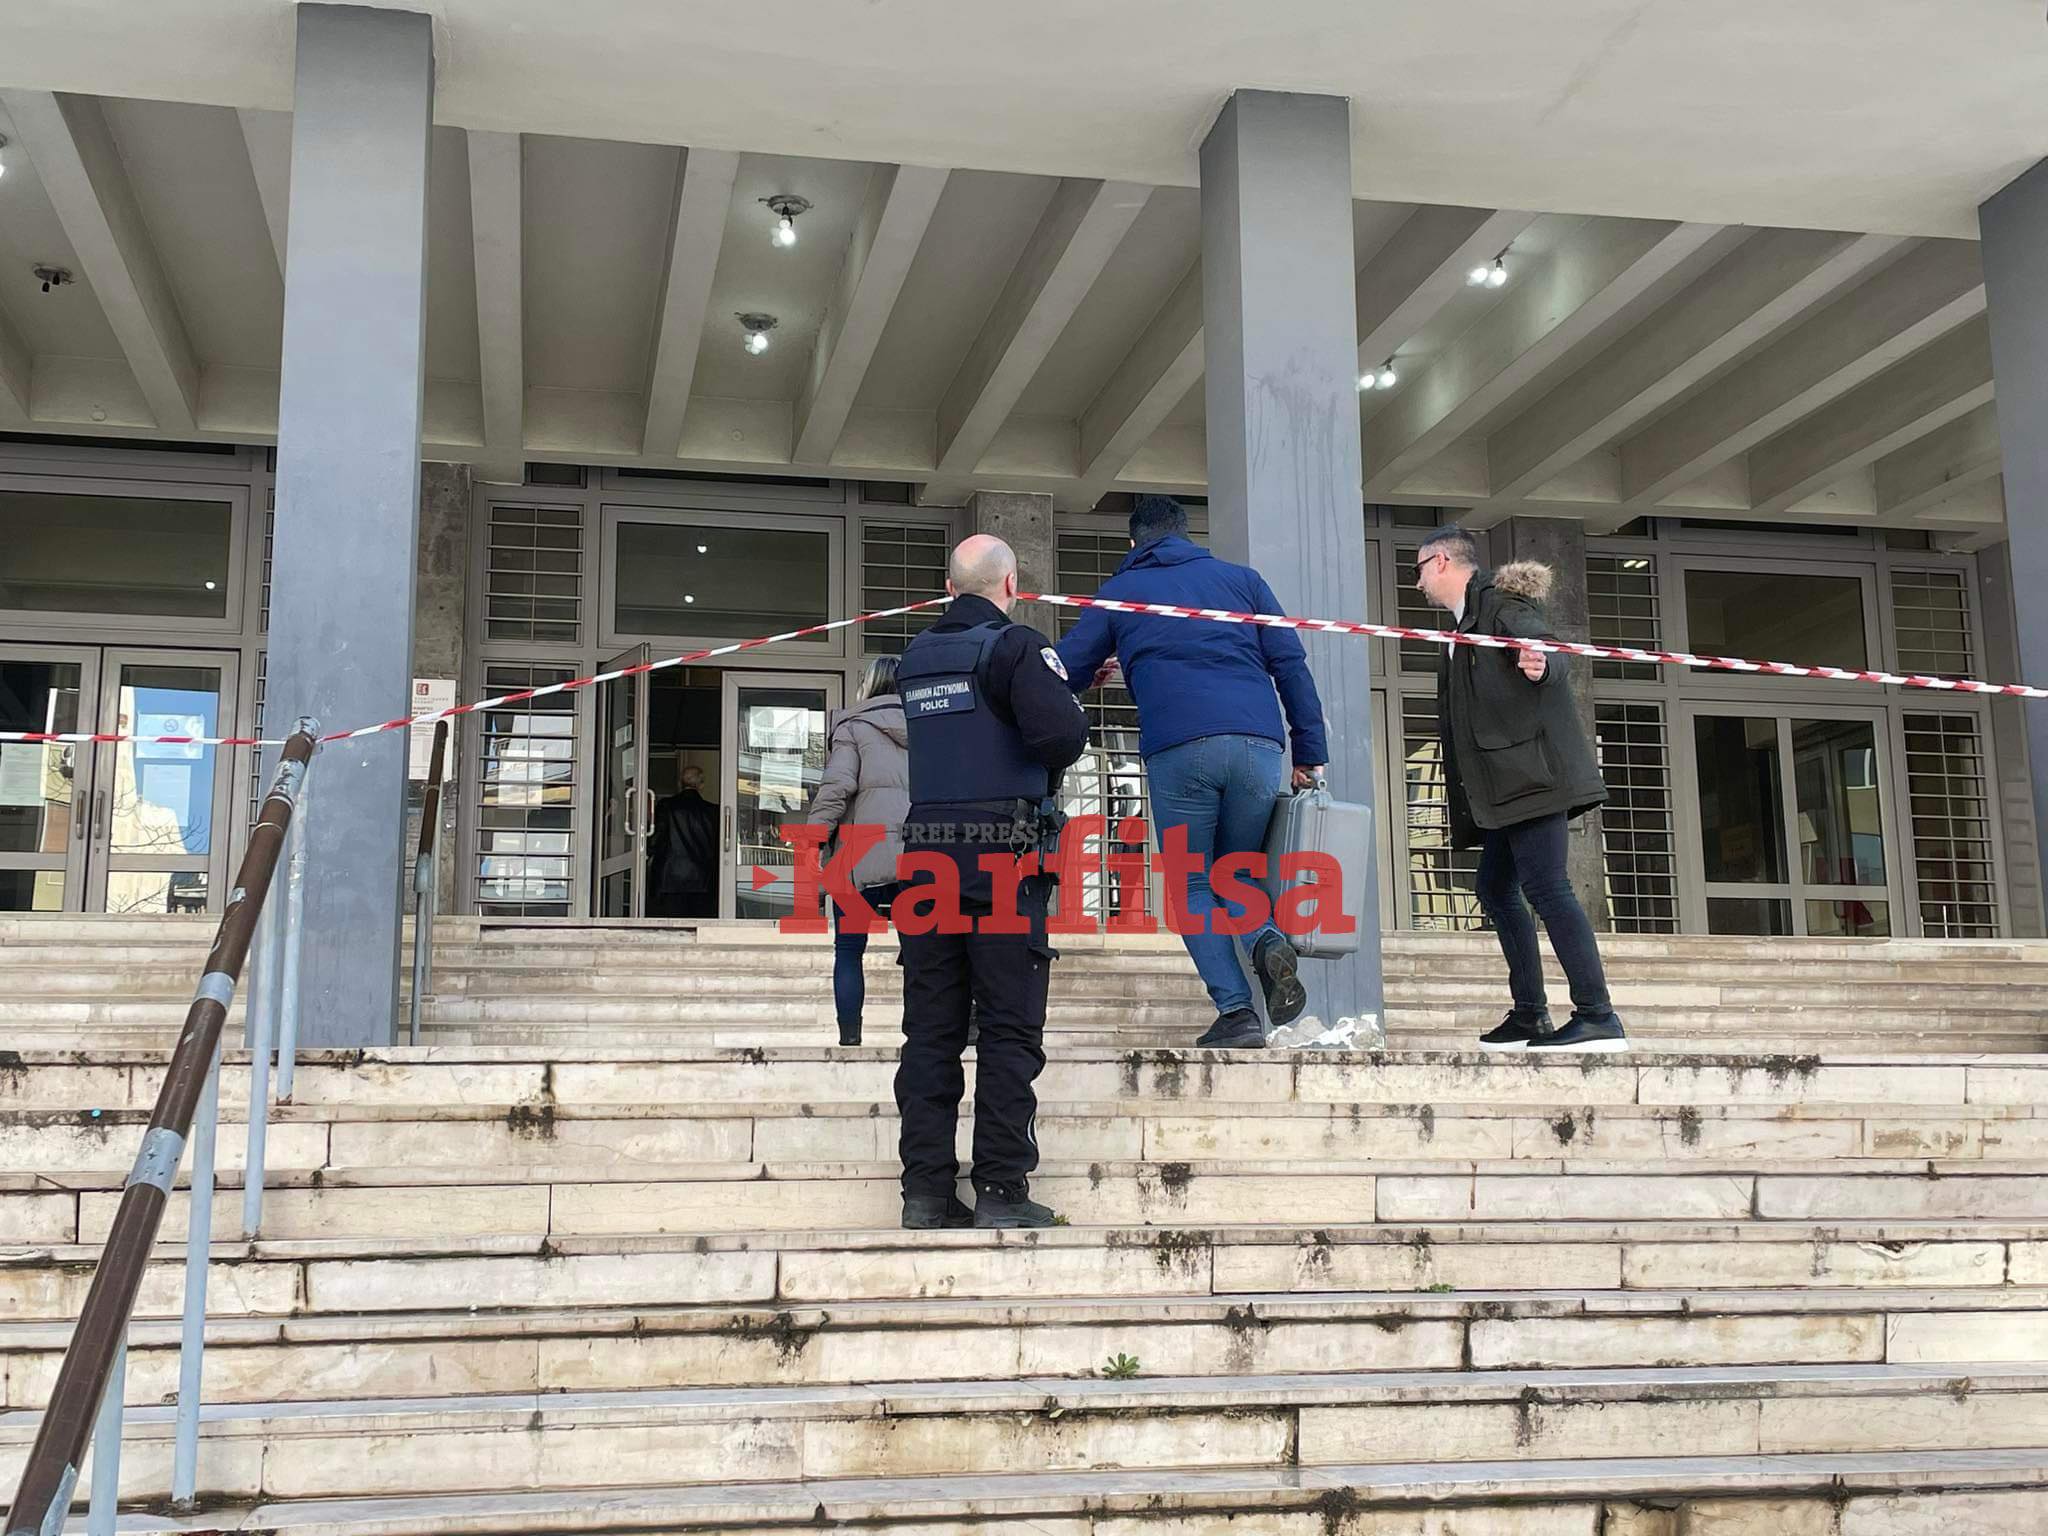 Θεσσαλονίκη: Βόμβα περιείχε ο φάκελος στο Δικαστικό Μέγαρο – Προοριζόταν για την πρόεδρο Εφετών (ΦΩΤΟ+Video)